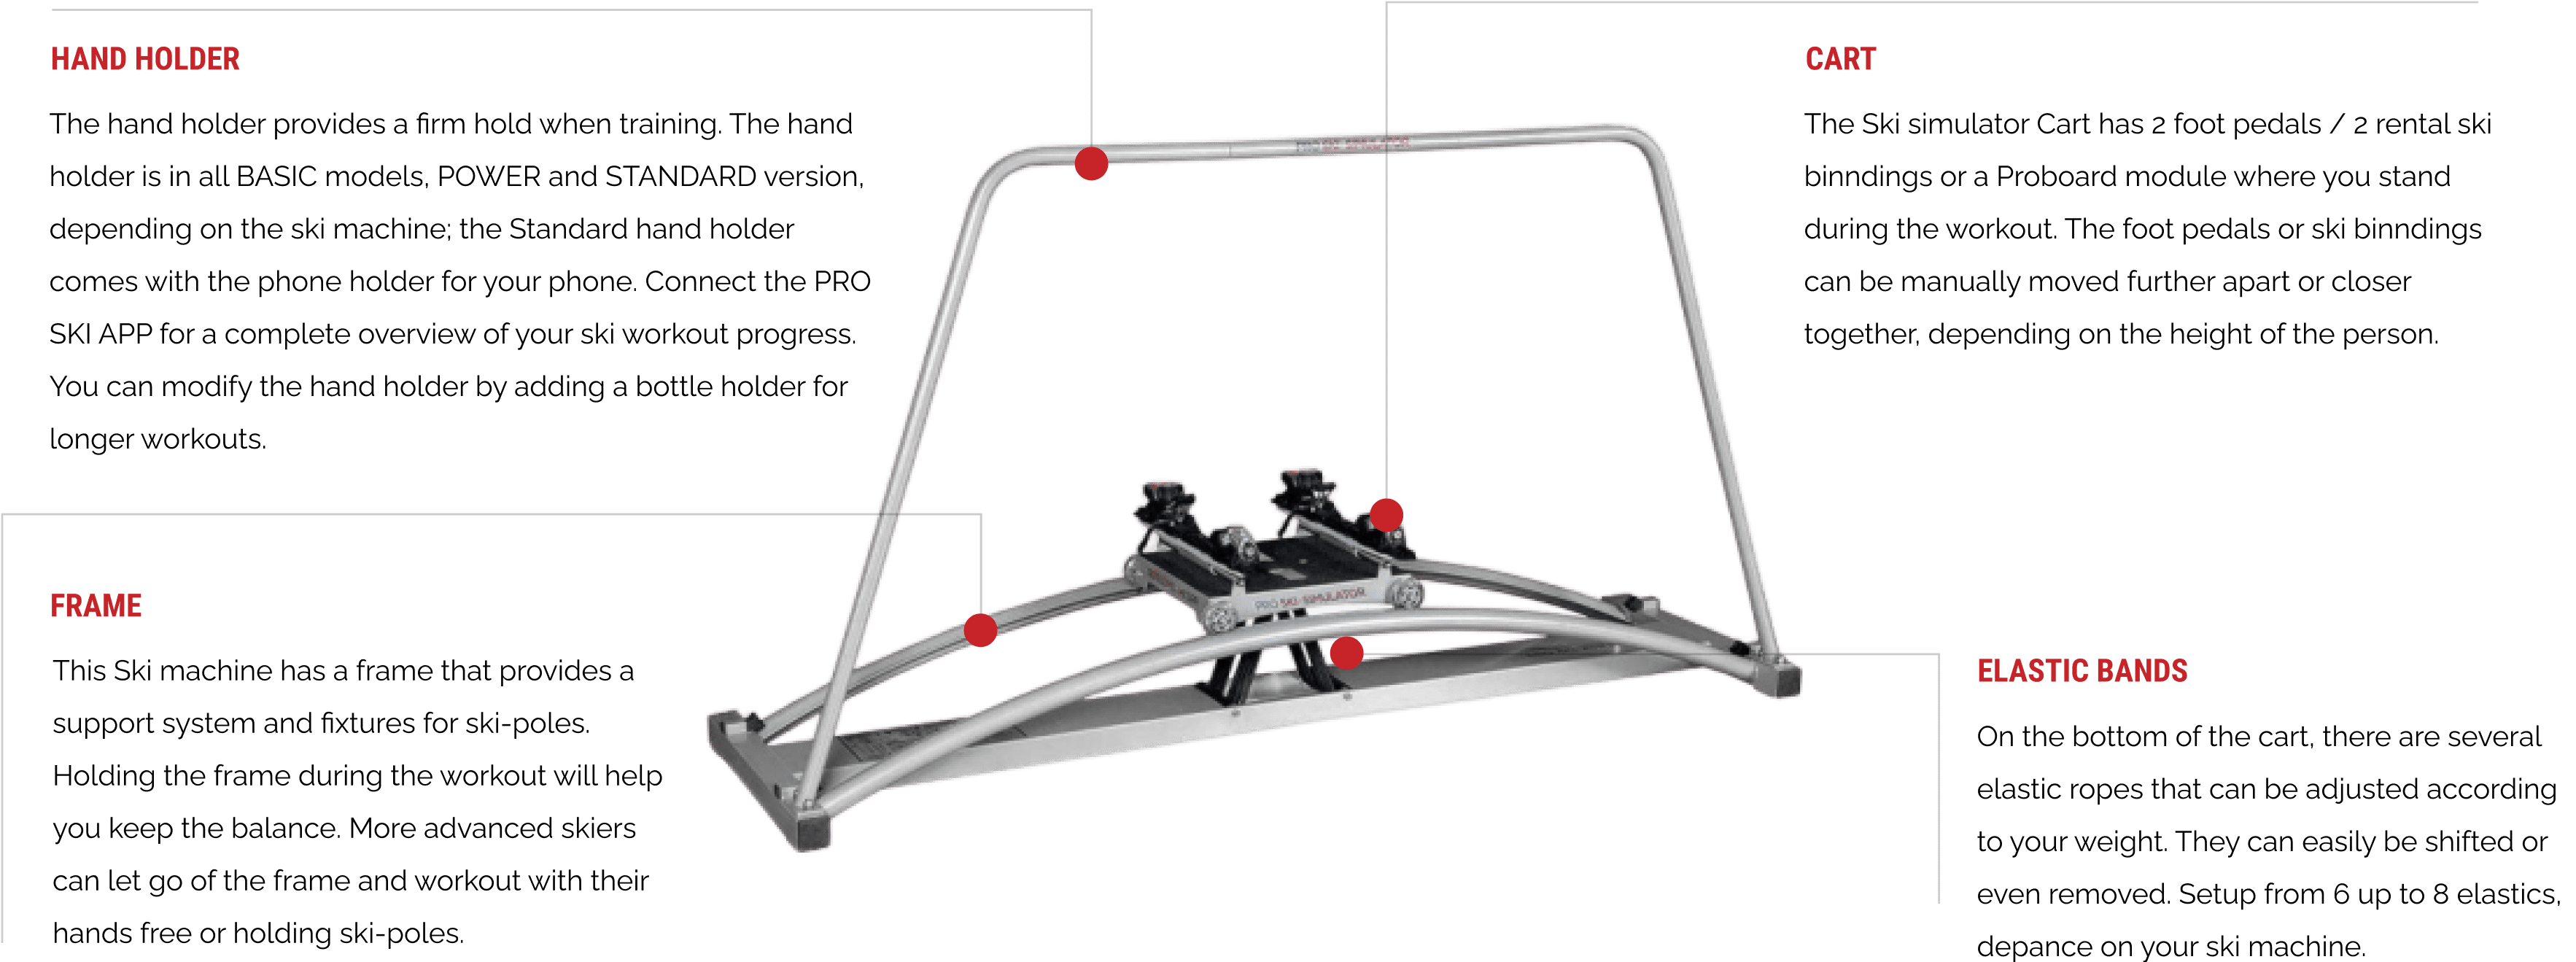 Ski Training Machines and Equipment - PRO SKI SIMULATOR